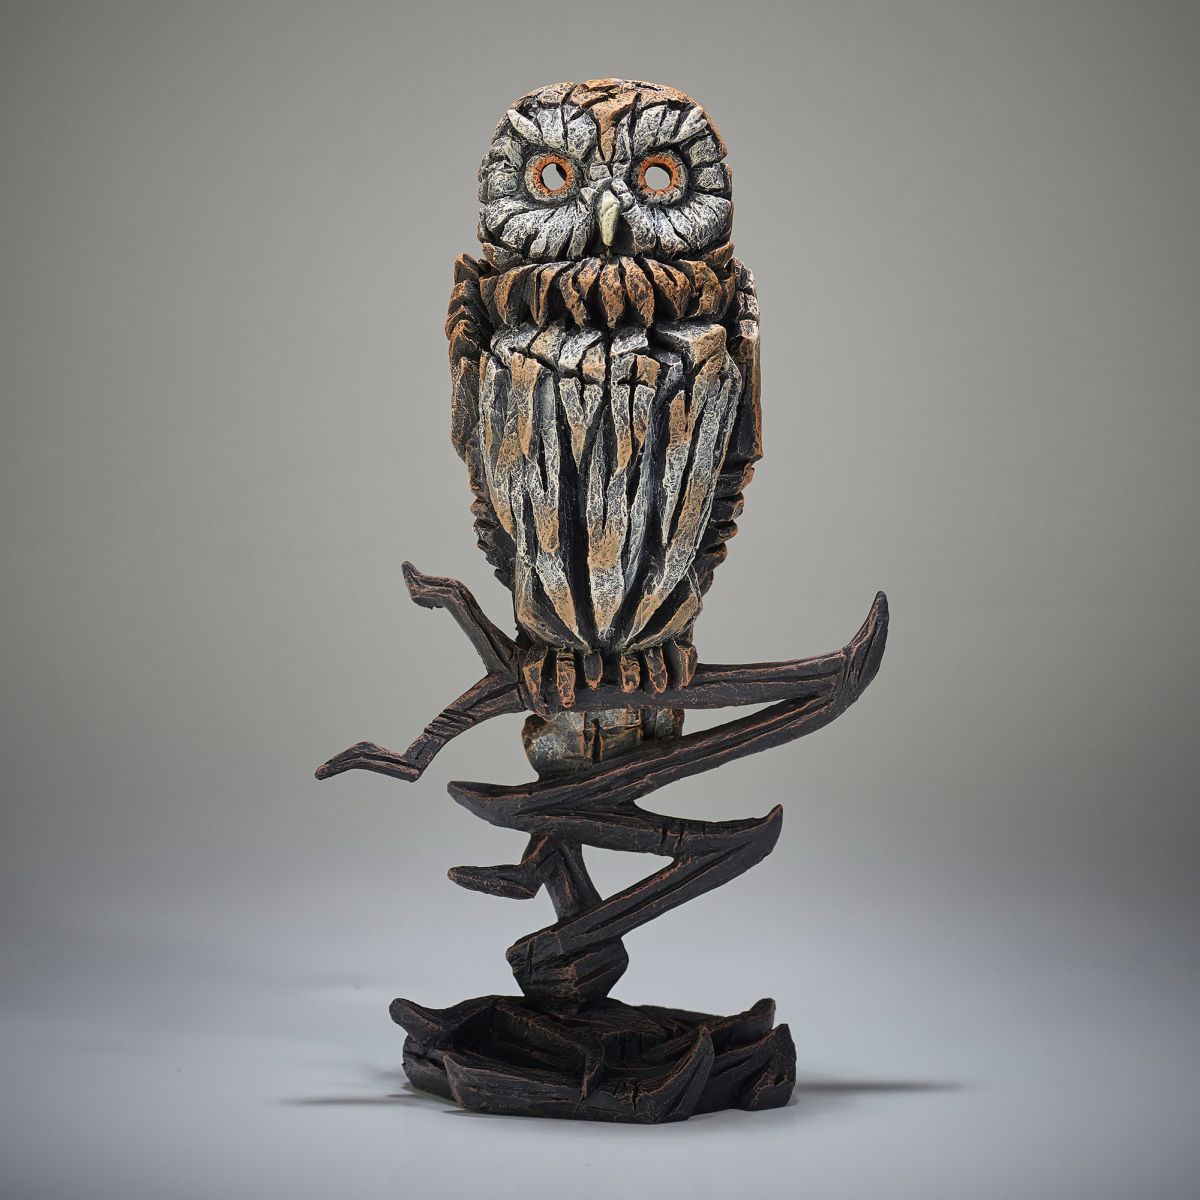 Edge Owl Small 幅18.1x奥行11.6x32.2 cm | 彫刻 置物 オブジェ フィギュア 動物 大きい リアル アート マット・バックリー 正規輸入品